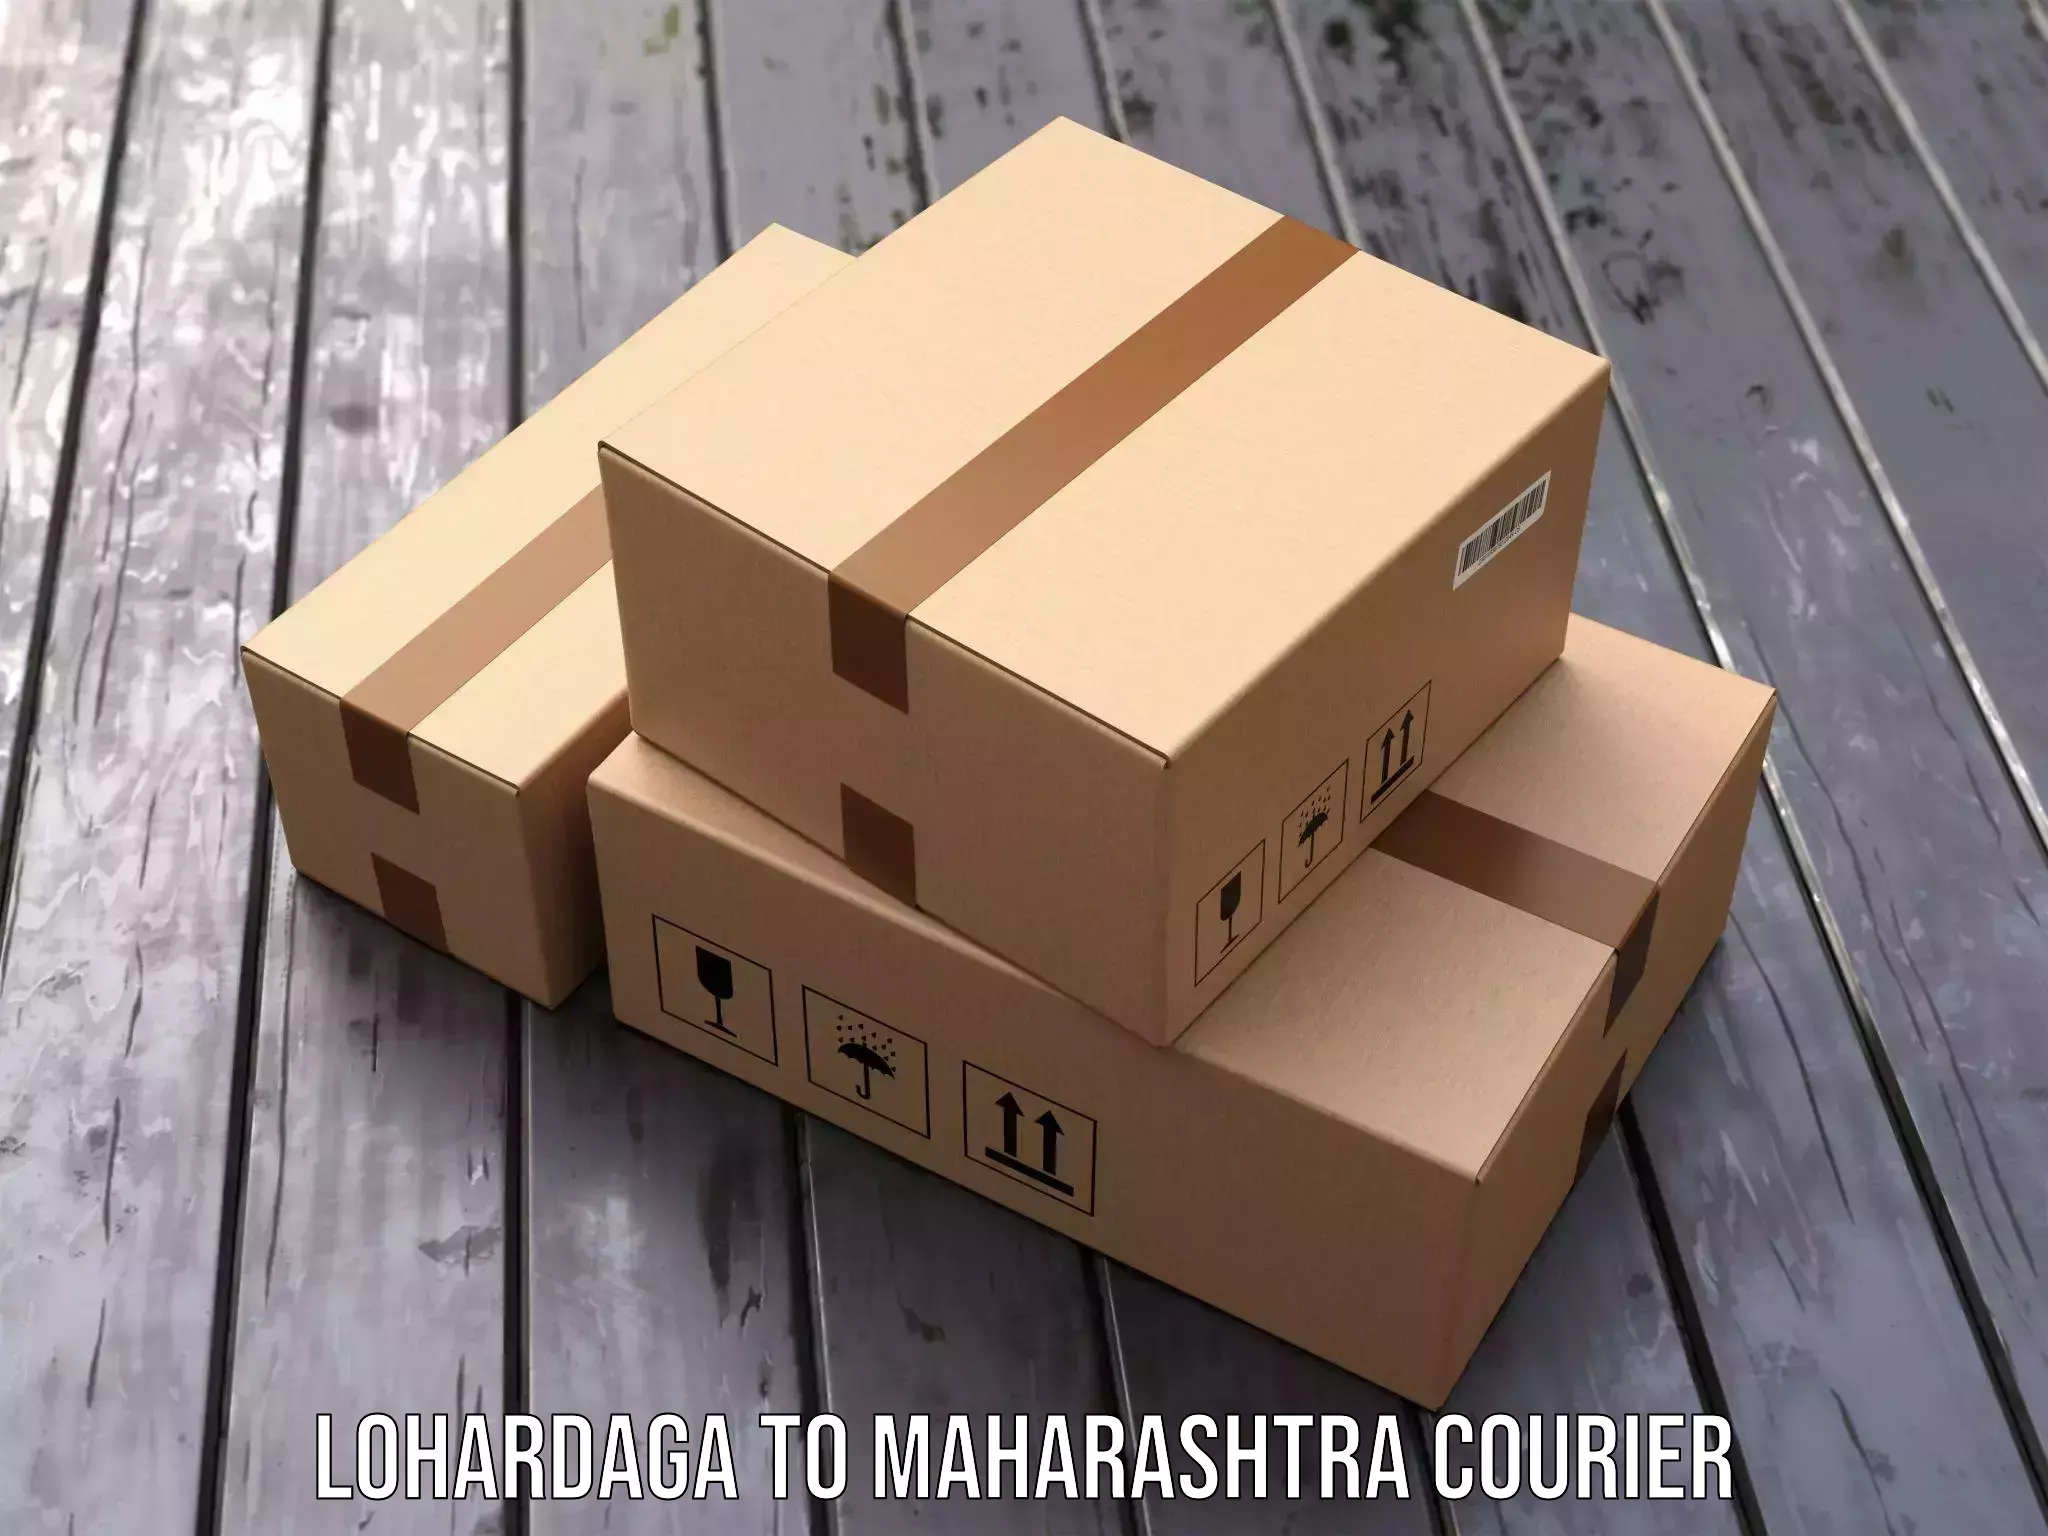 Cargo delivery service Lohardaga to Maharashtra